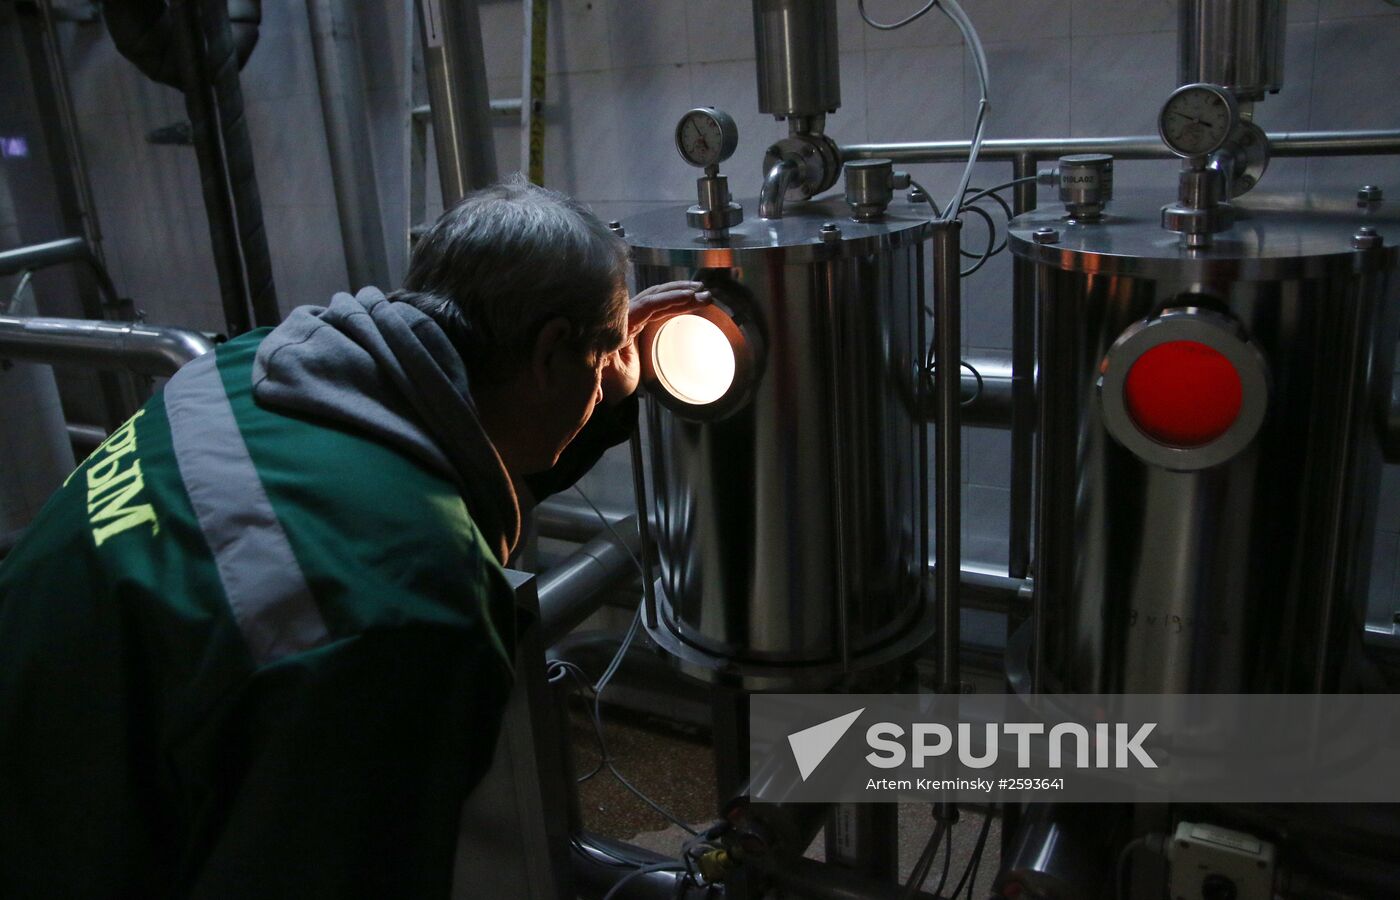 Krym brewing company in Simferopol